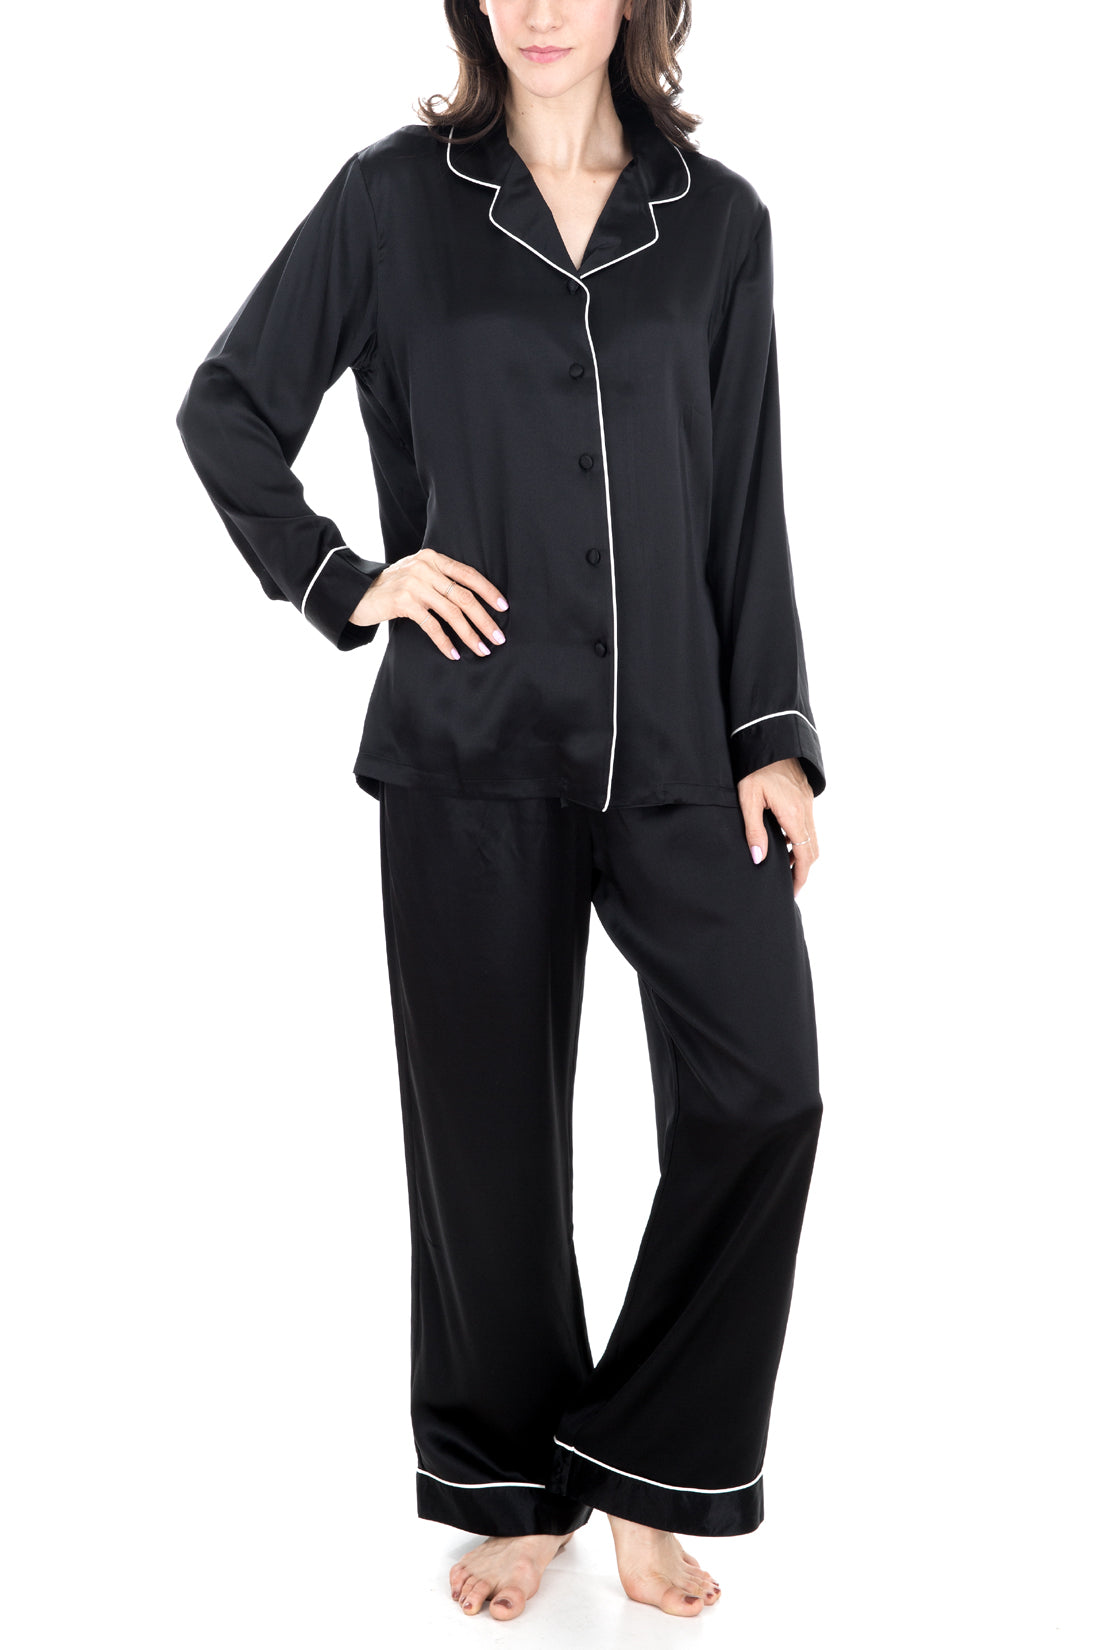 Natalya Silk Pajamas - Women's Sleepwear, 100 pct Silk Pajamas